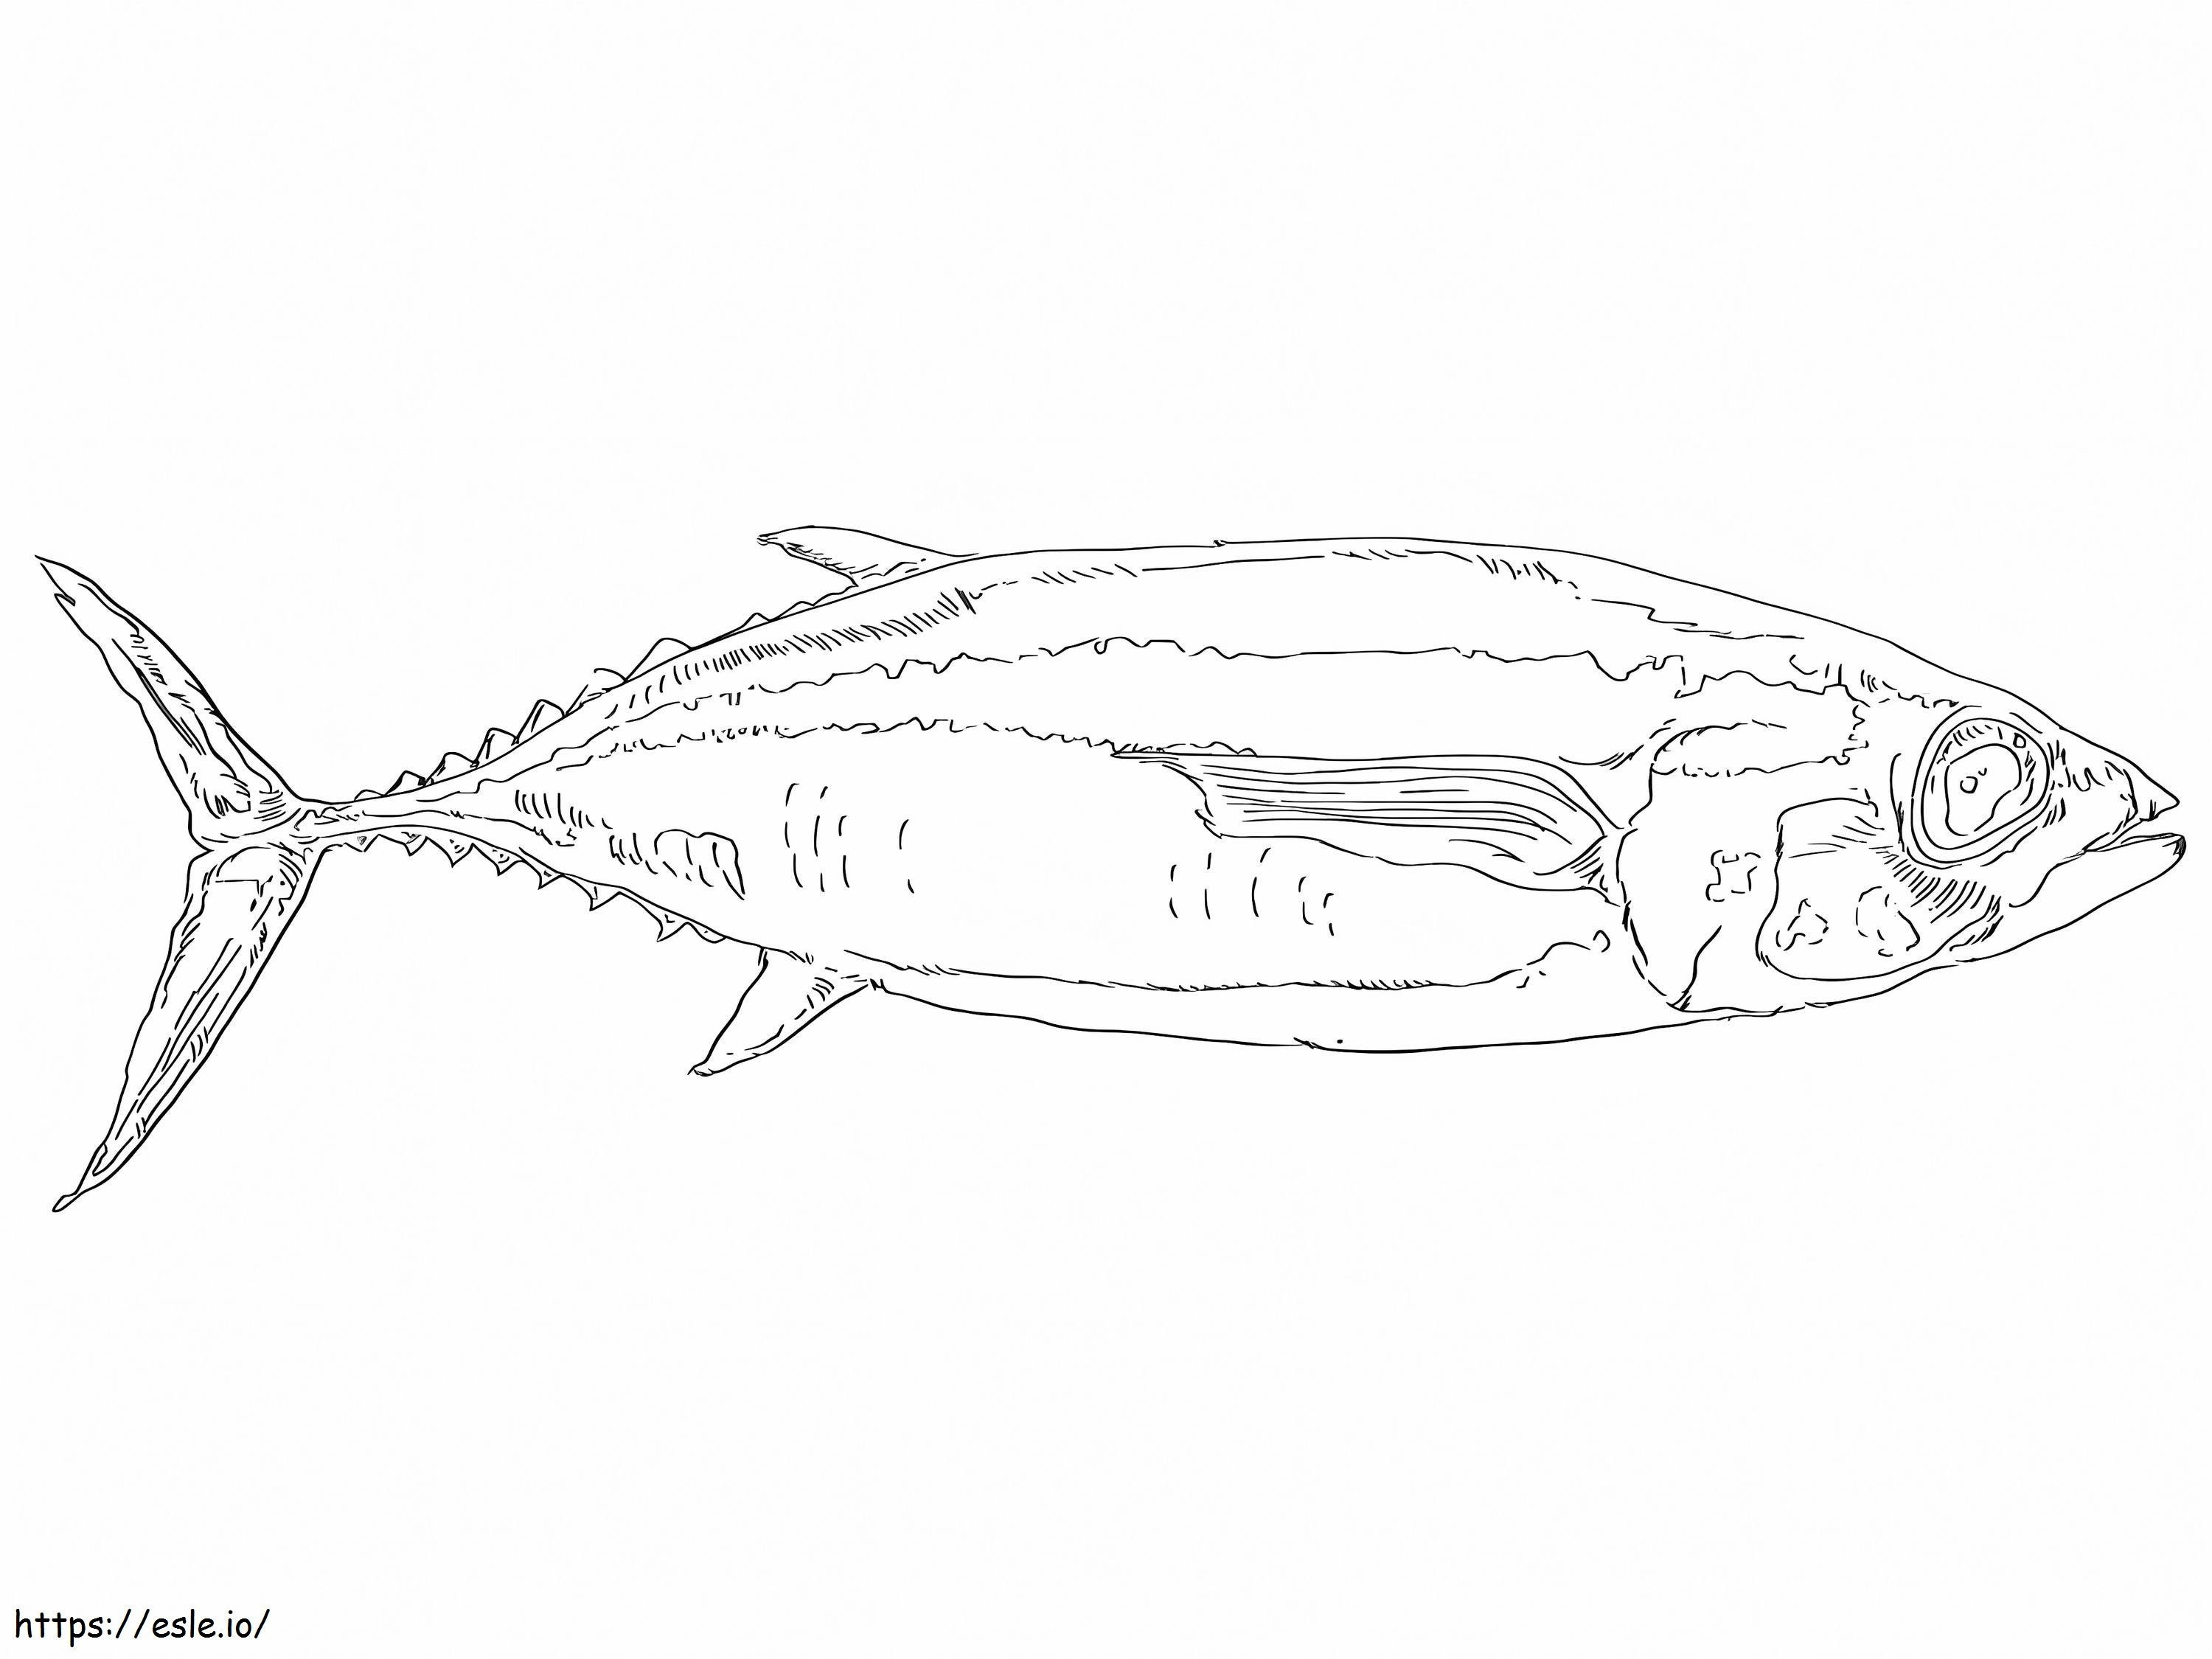 White Tuna Fish coloring page